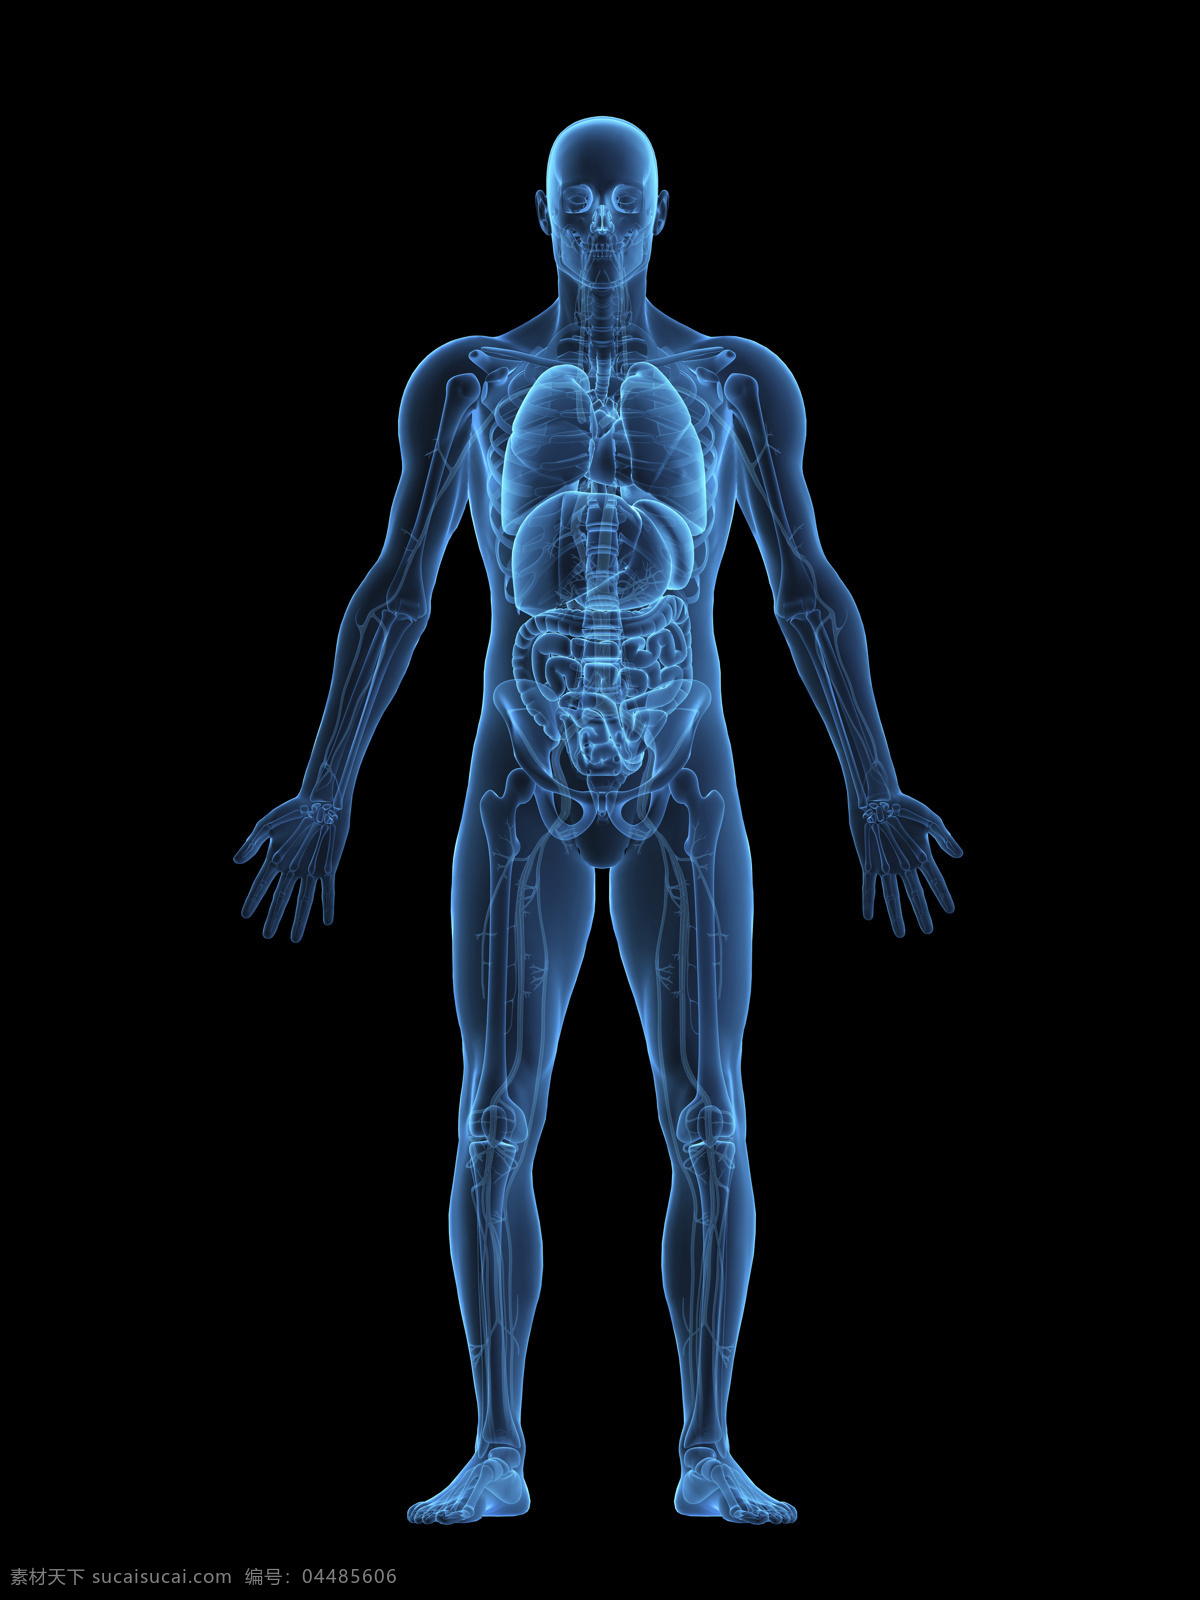 人体 内脏 器官 ct 人体器官 人体骨骼 骨骼结构 医学科技 医疗科技 人体结构 人体器官图 人物图片